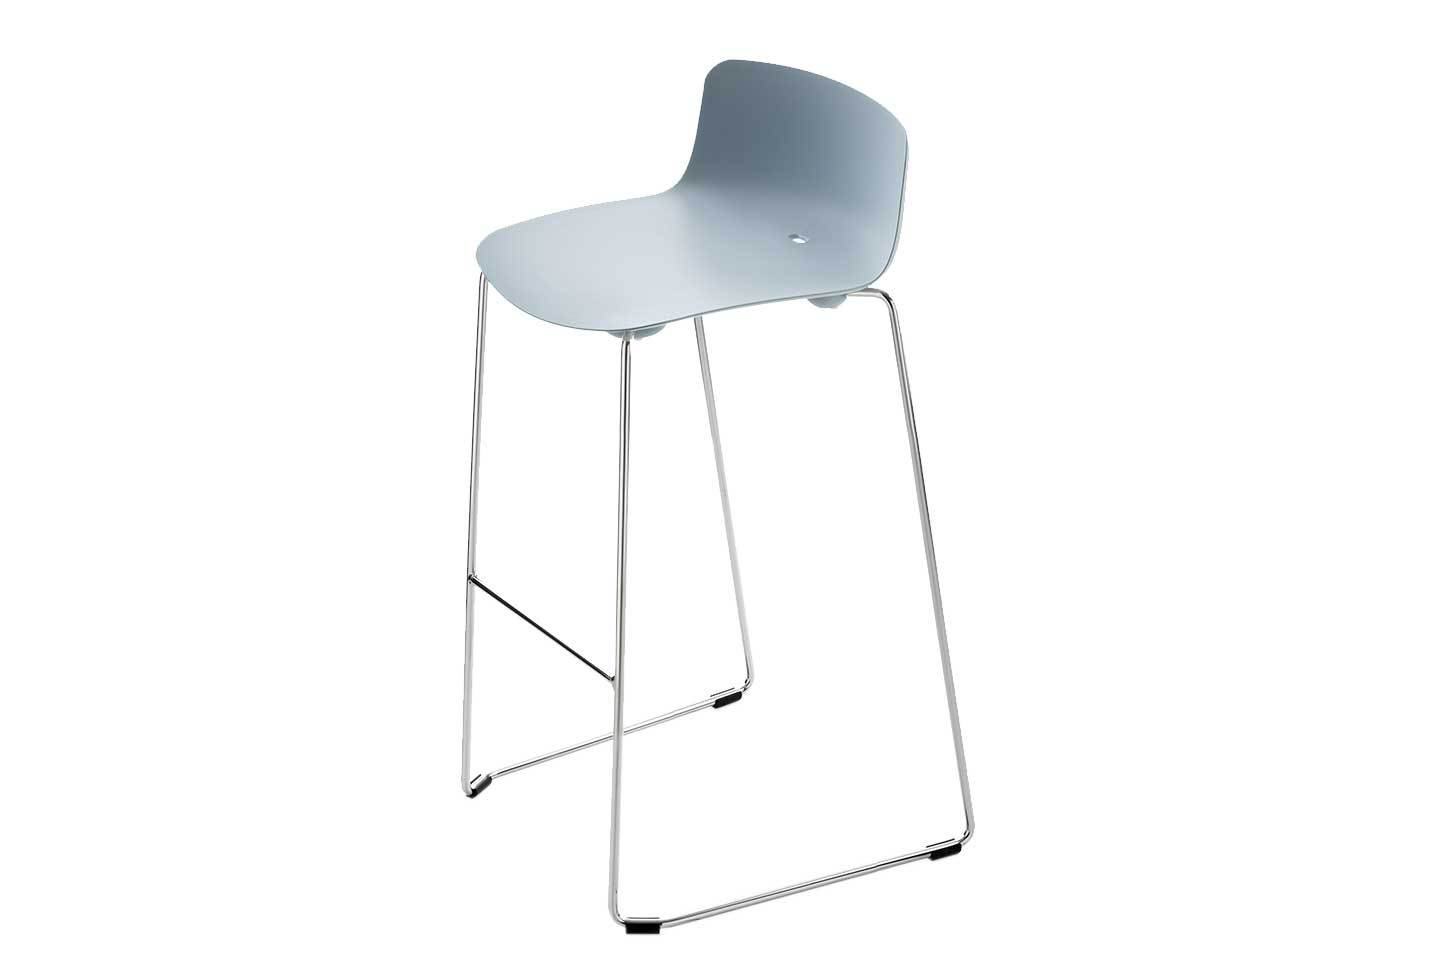 Mobili Italia_Colos VESPER 3B counter stool